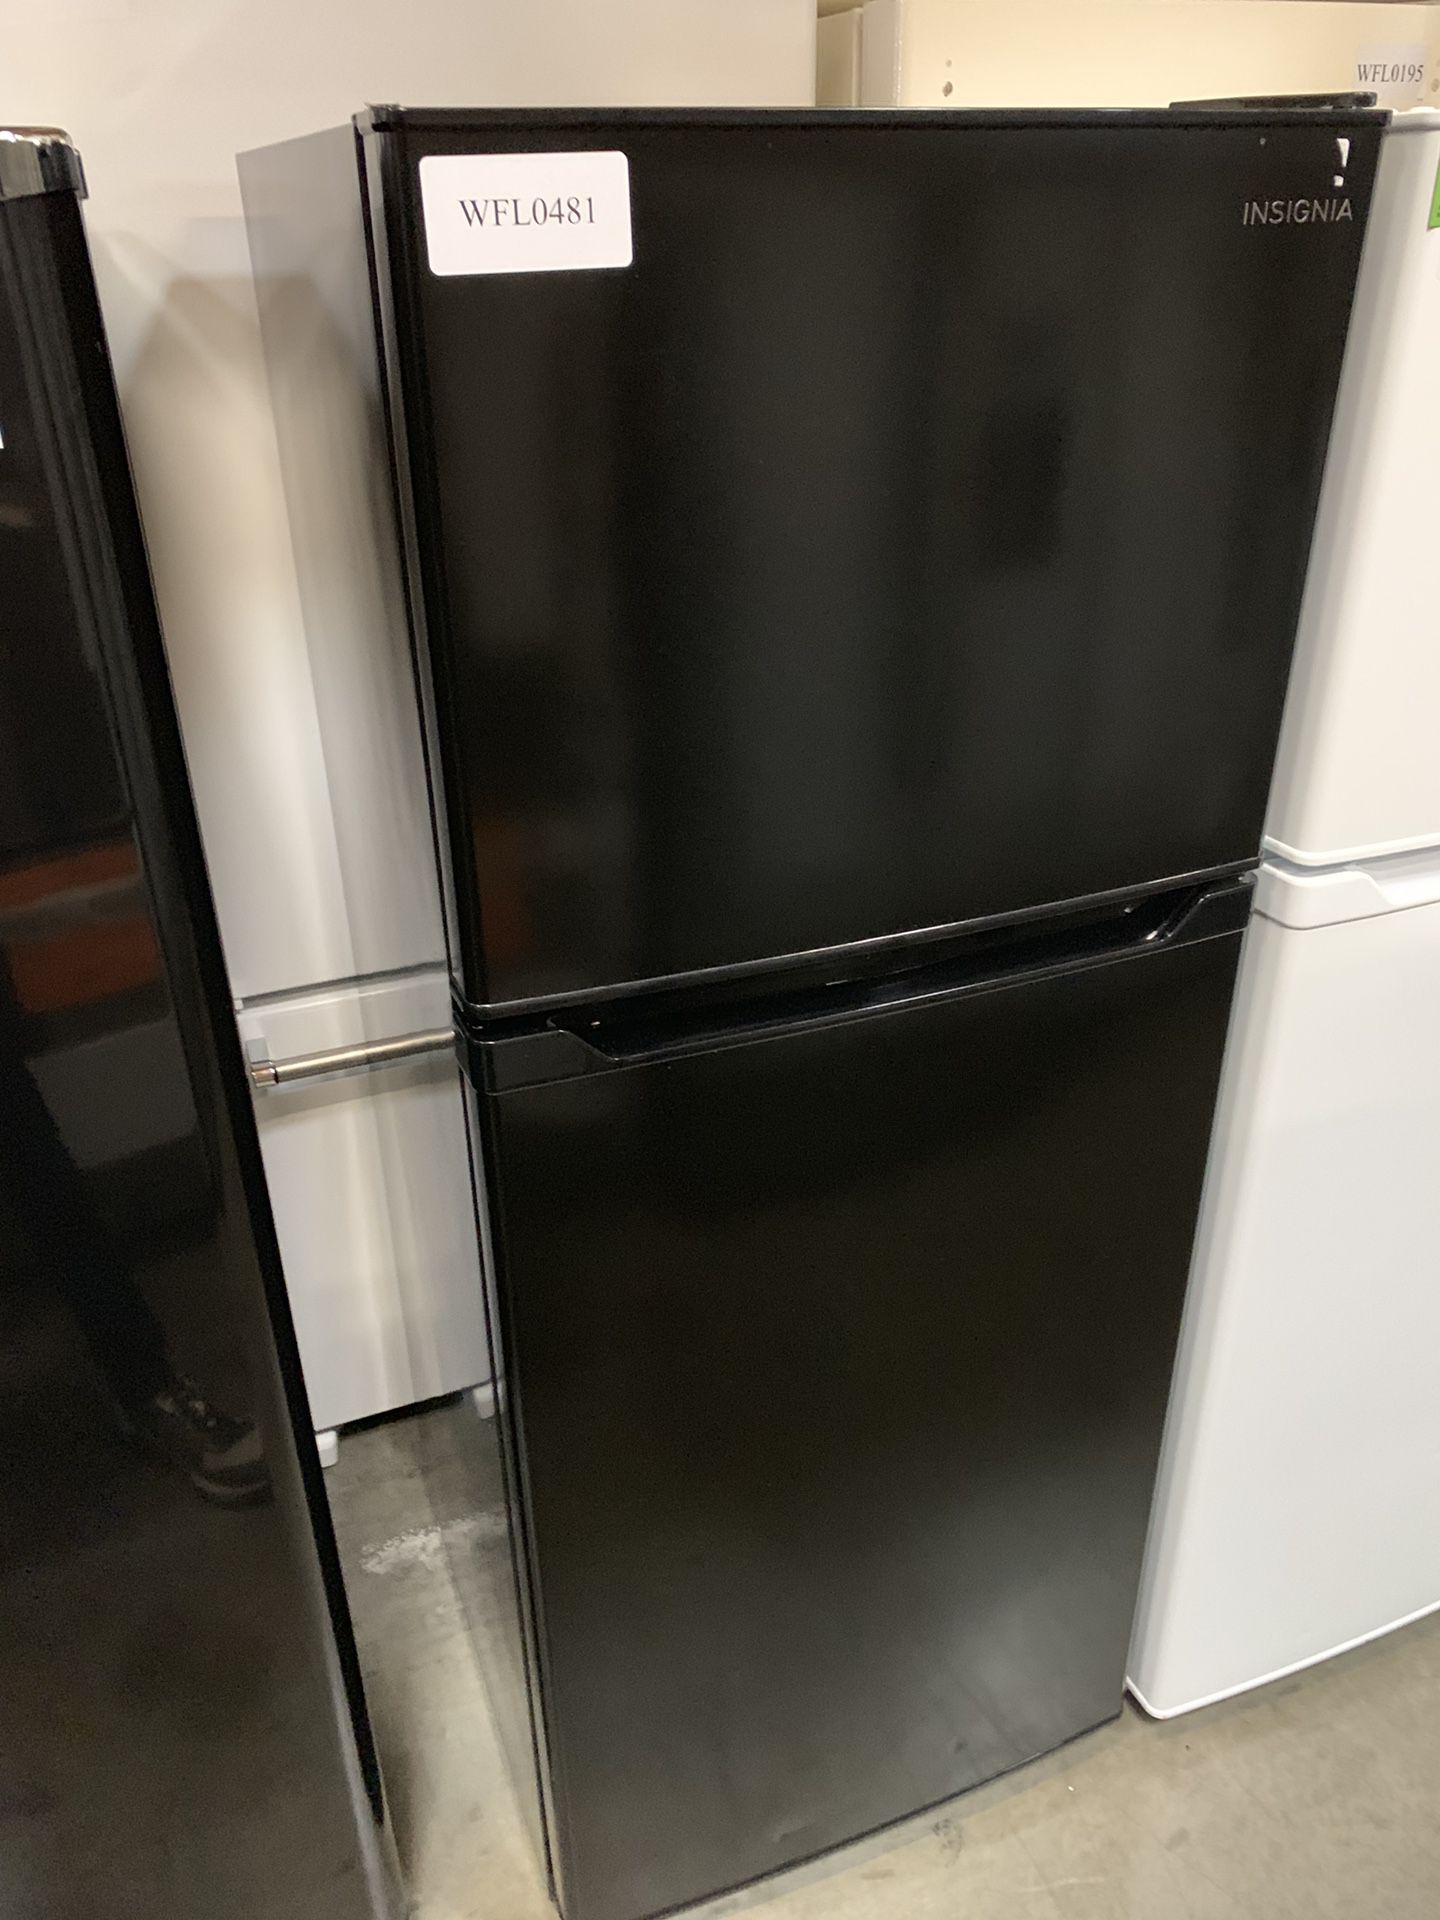 Top freezer Refrigerator - Insignia